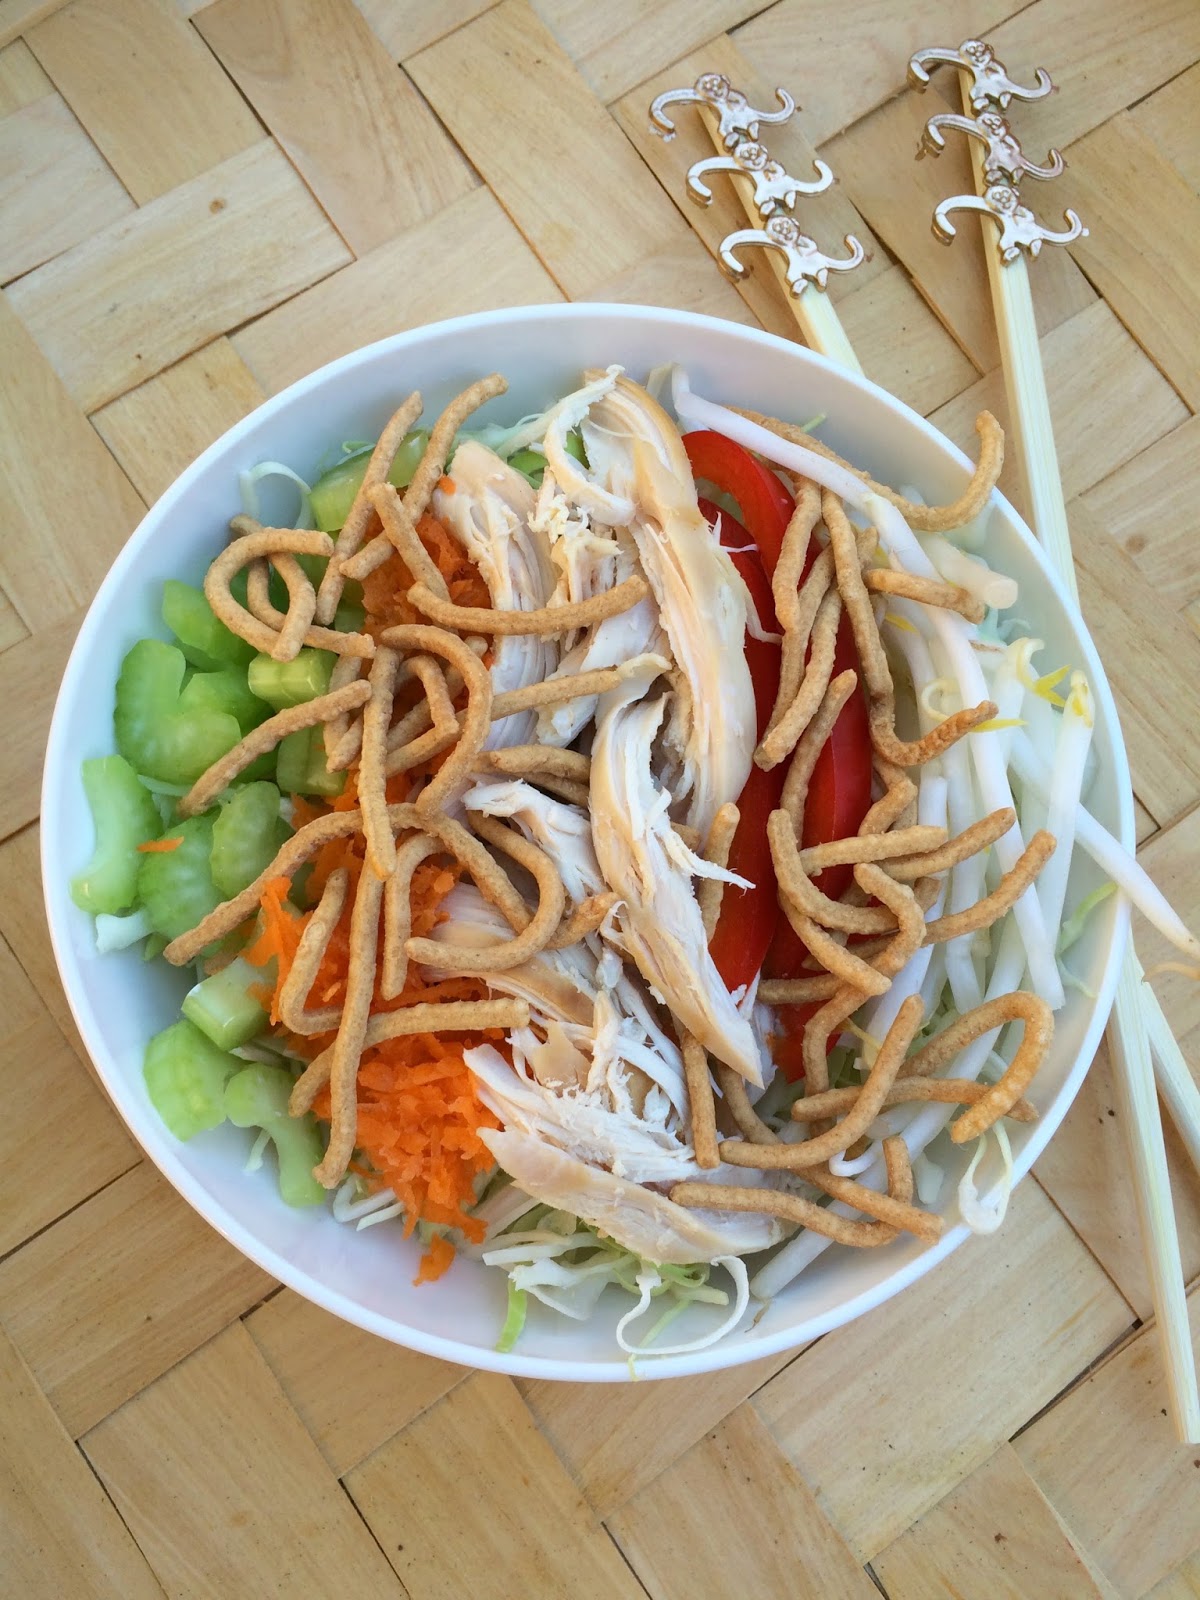 chicken chop suey with noodles